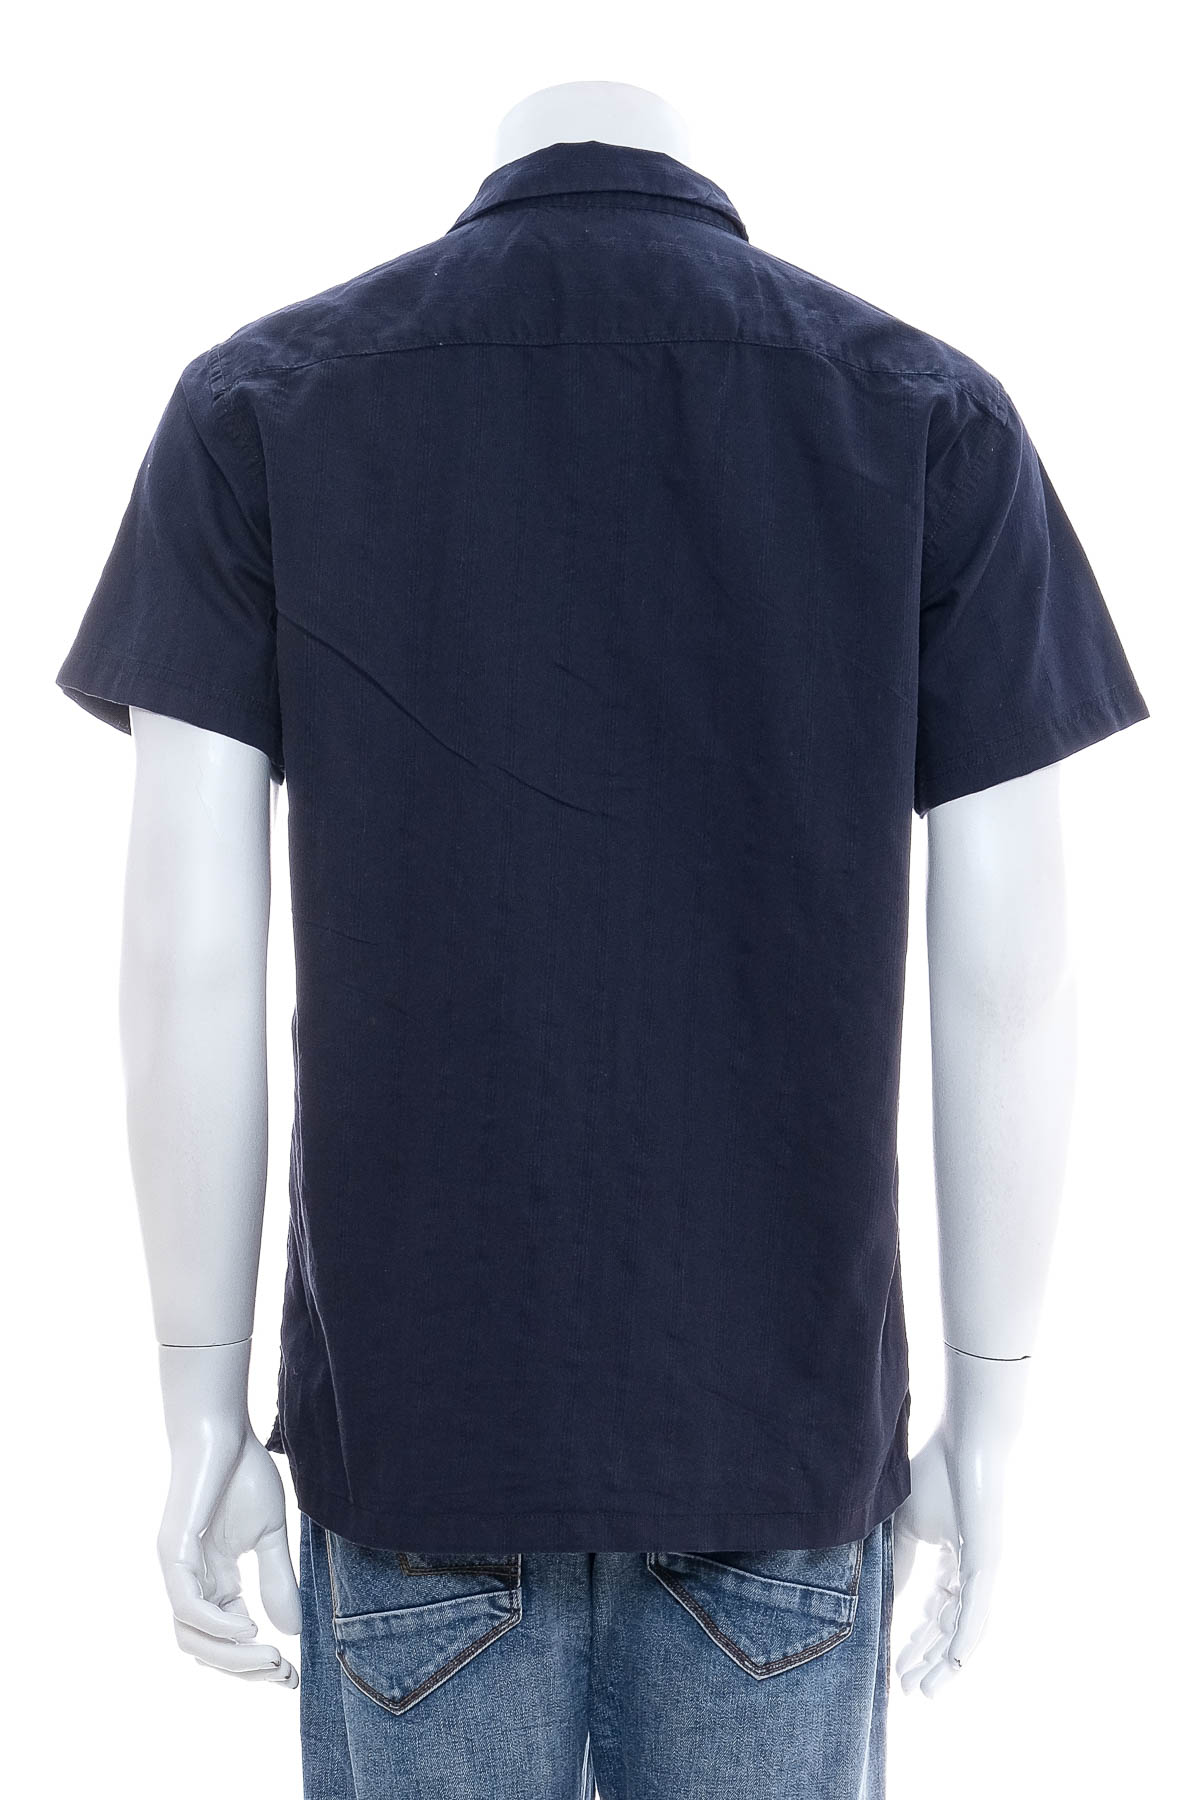 Ανδρικό πουκάμισο - SMOG - 1